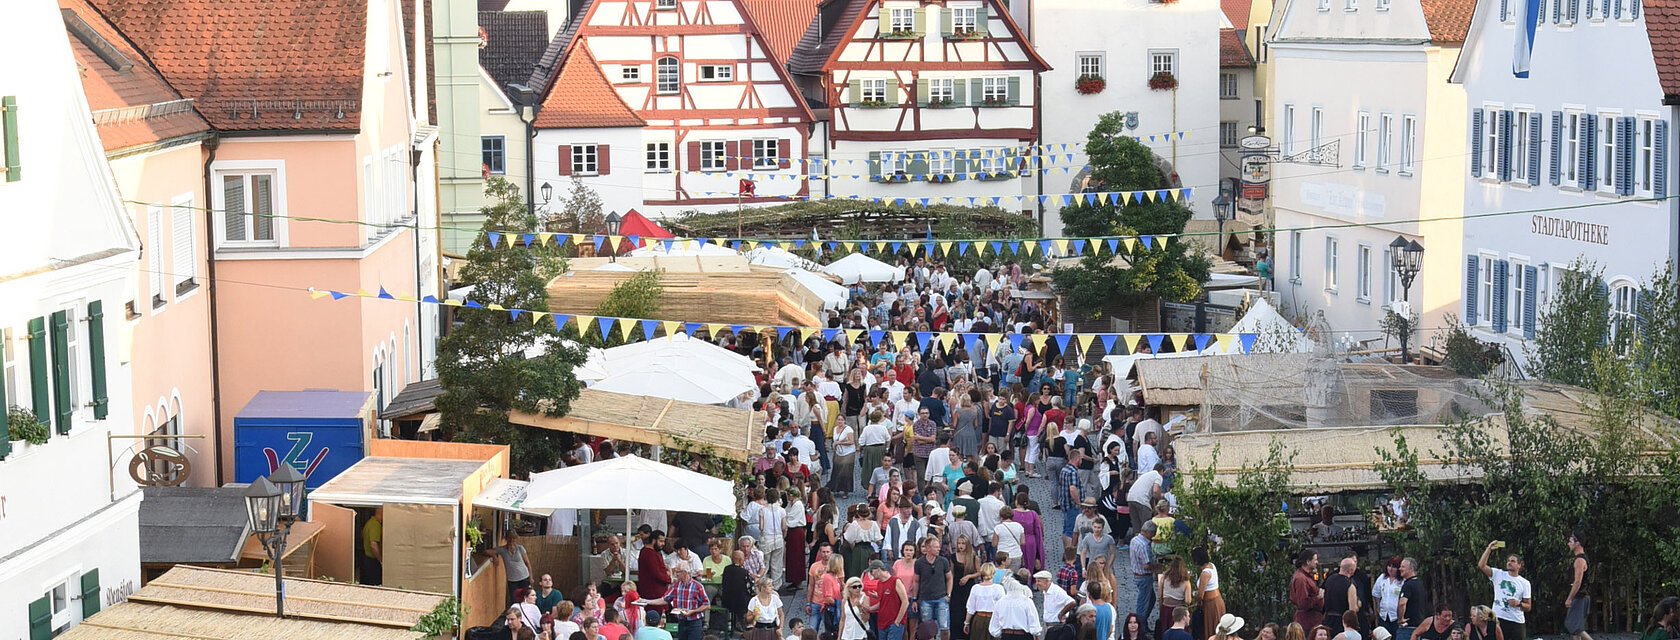 Historisches Stadtfest Monheim 2018 - Ein Blick in die Innenstadt